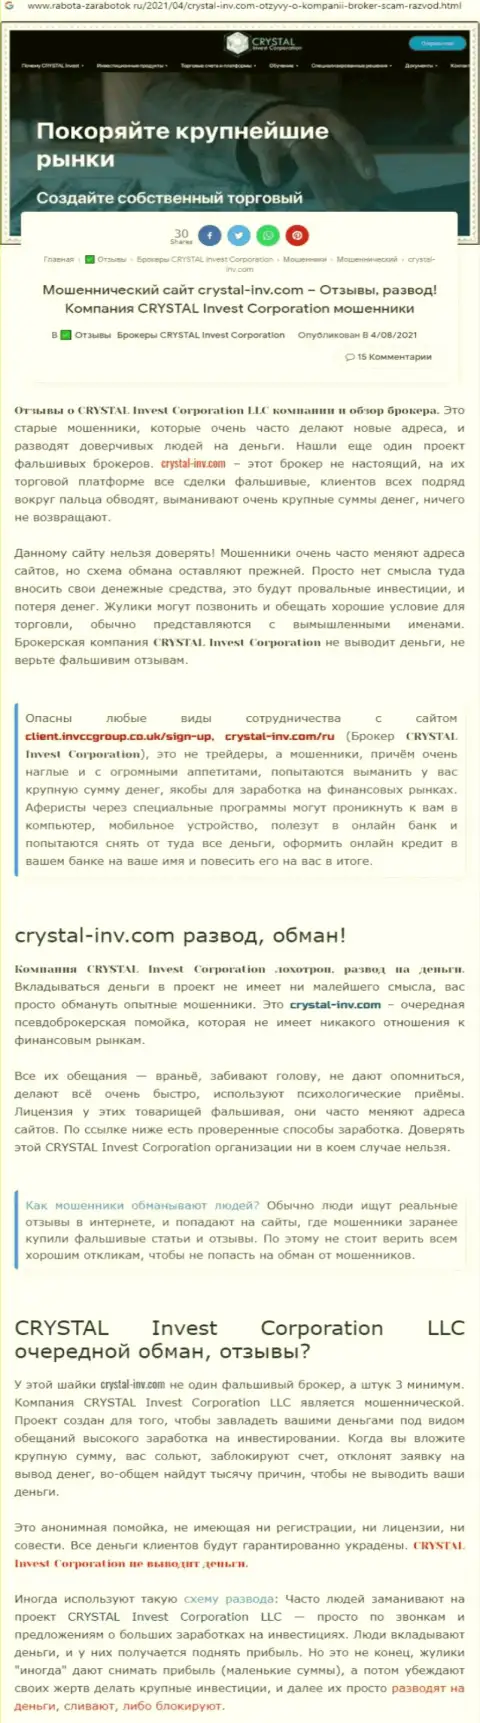 Материал, выводящий на чистую воду организацию Crystal-Inv Com, который взят с сайта с обзорами деятельности разных организаций